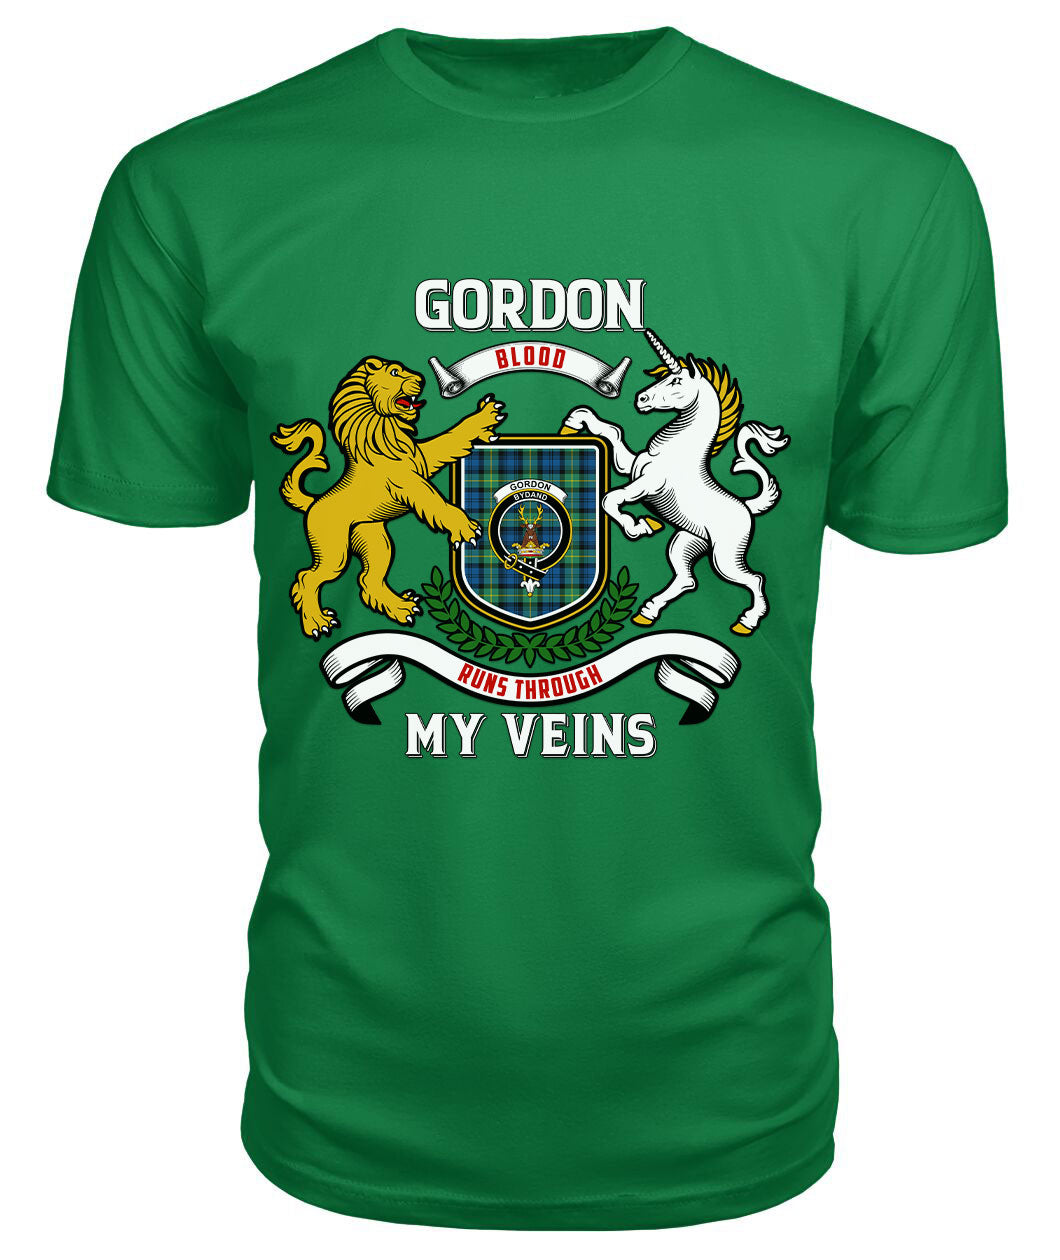 Gordon Ancient Tartan Crest 2D T-shirt - Blood Runs Through My Veins Style